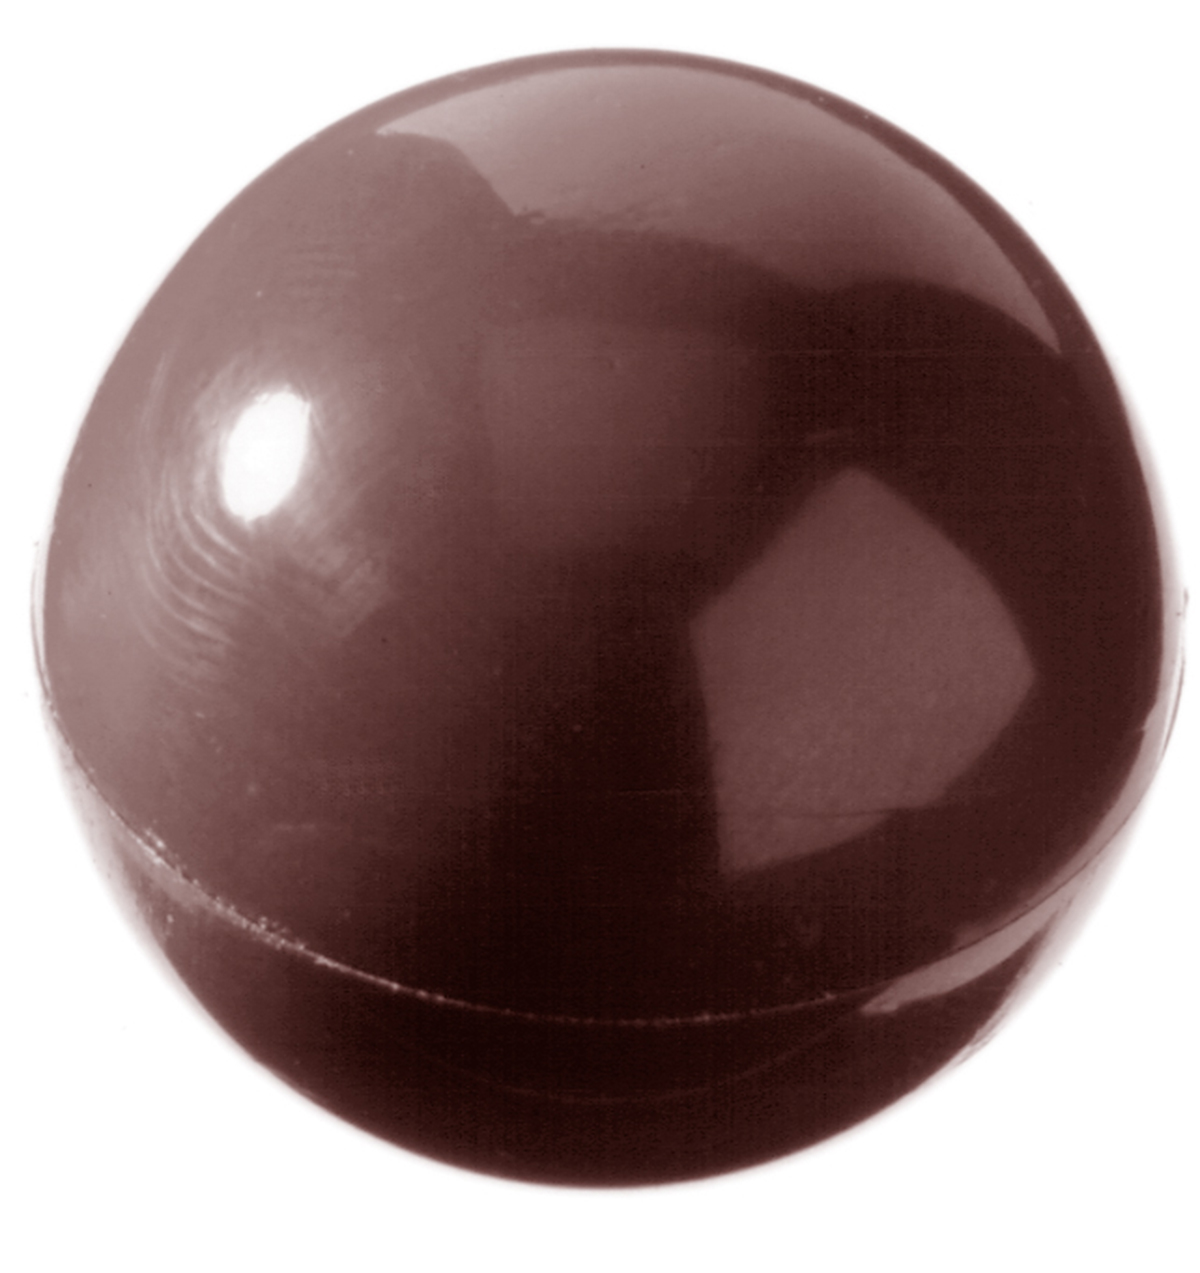 Billede af Professionel chokoladeform i polycarbonat - Half sphere Ø2,5 cm CW1158